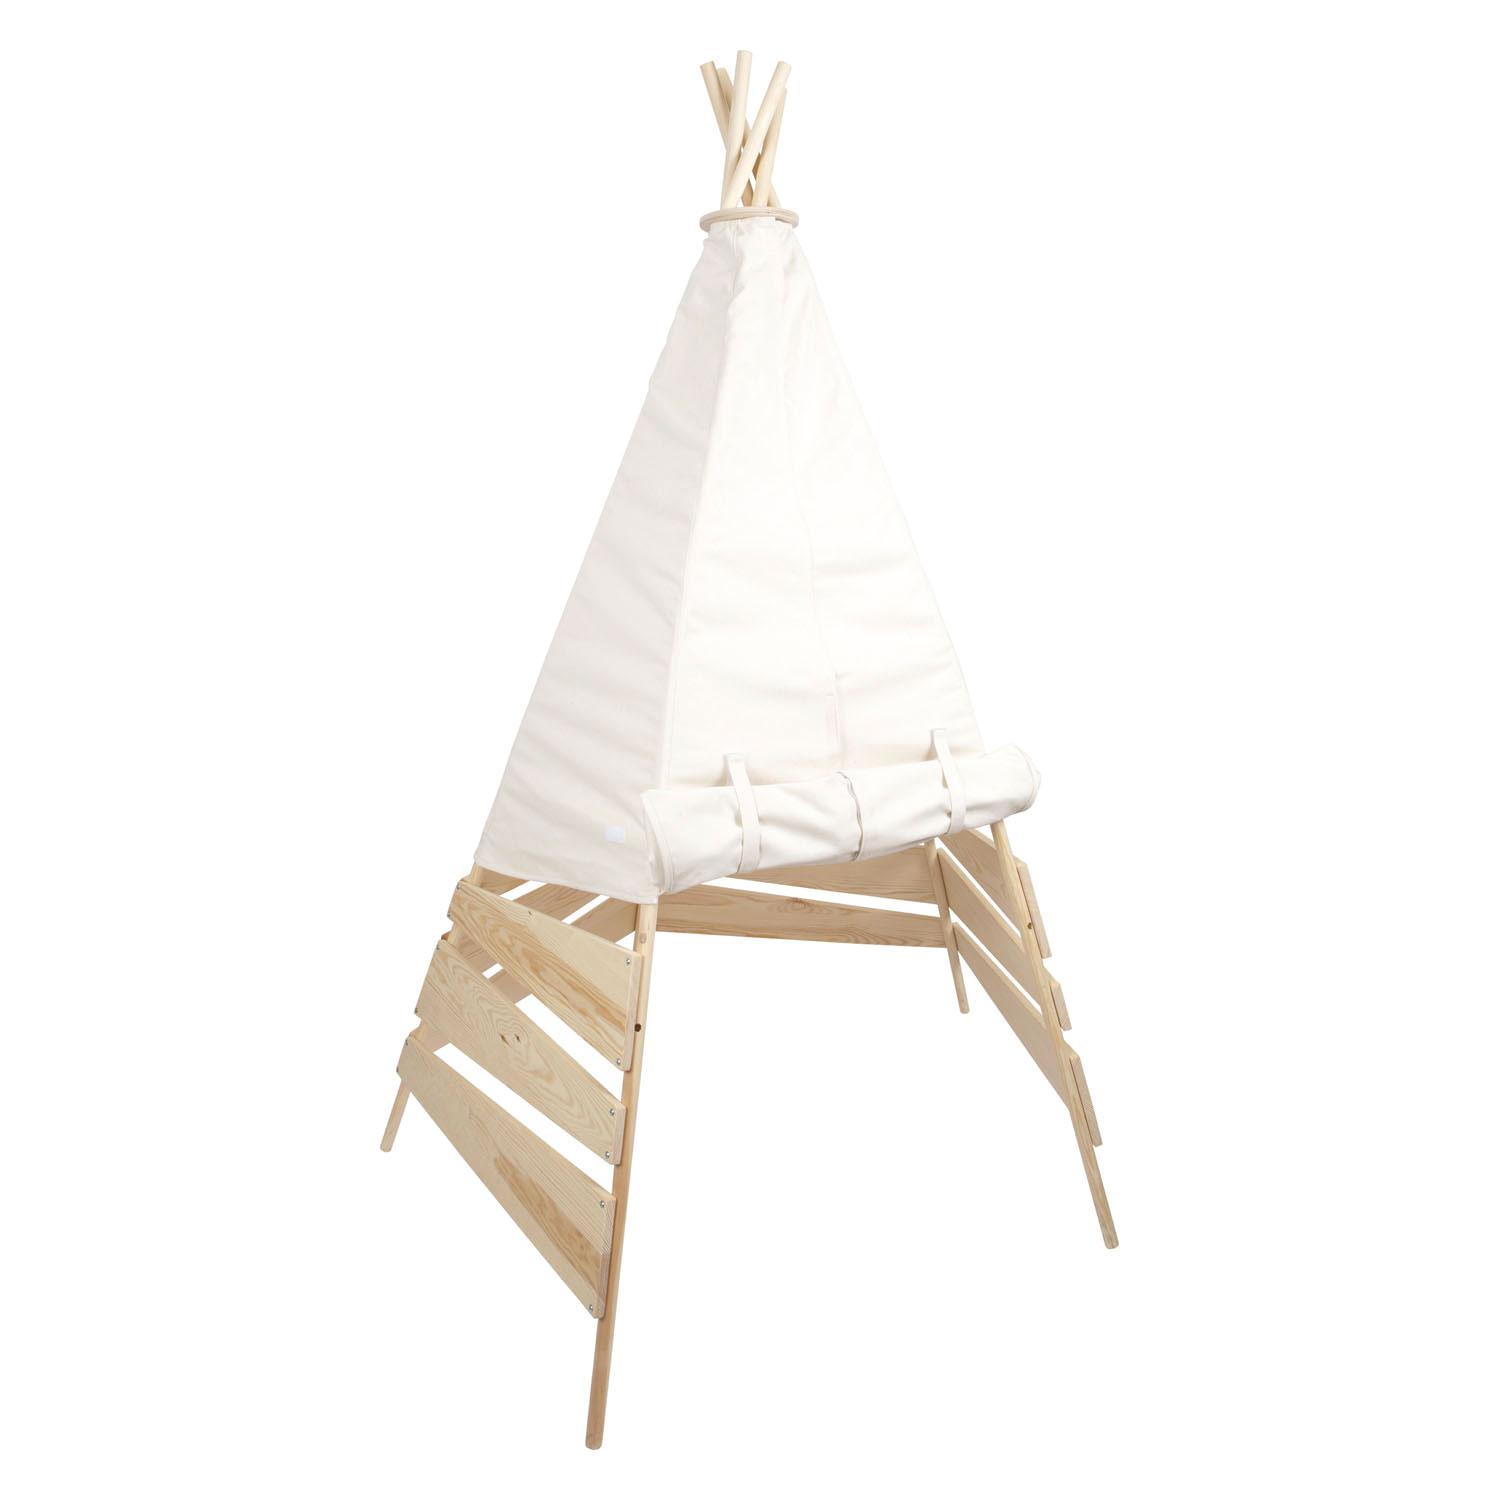 Small Foot - Tipi-Zelt aus Holz für den Außenbereich